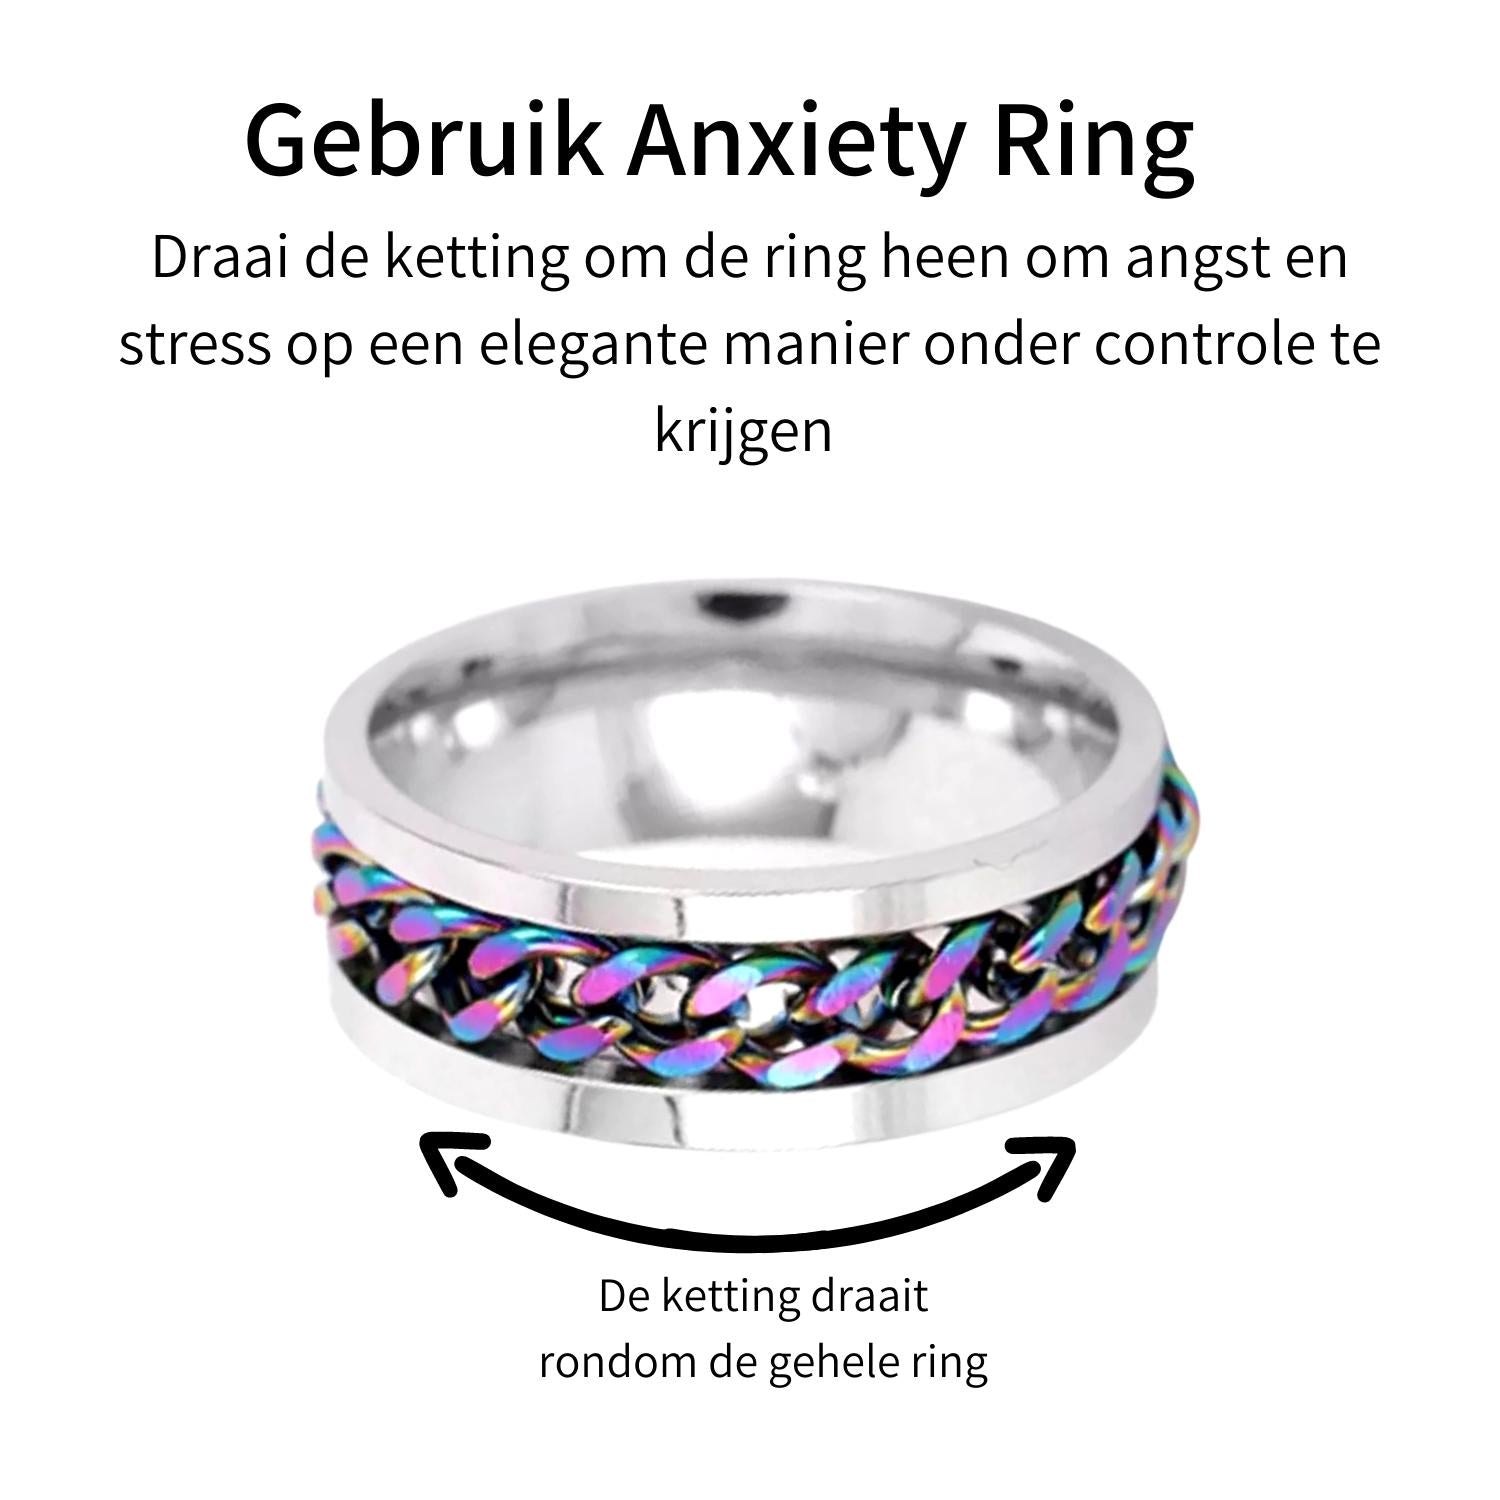 Anxiety Ring (Kettinkje) Regenboog ketting Gebruik